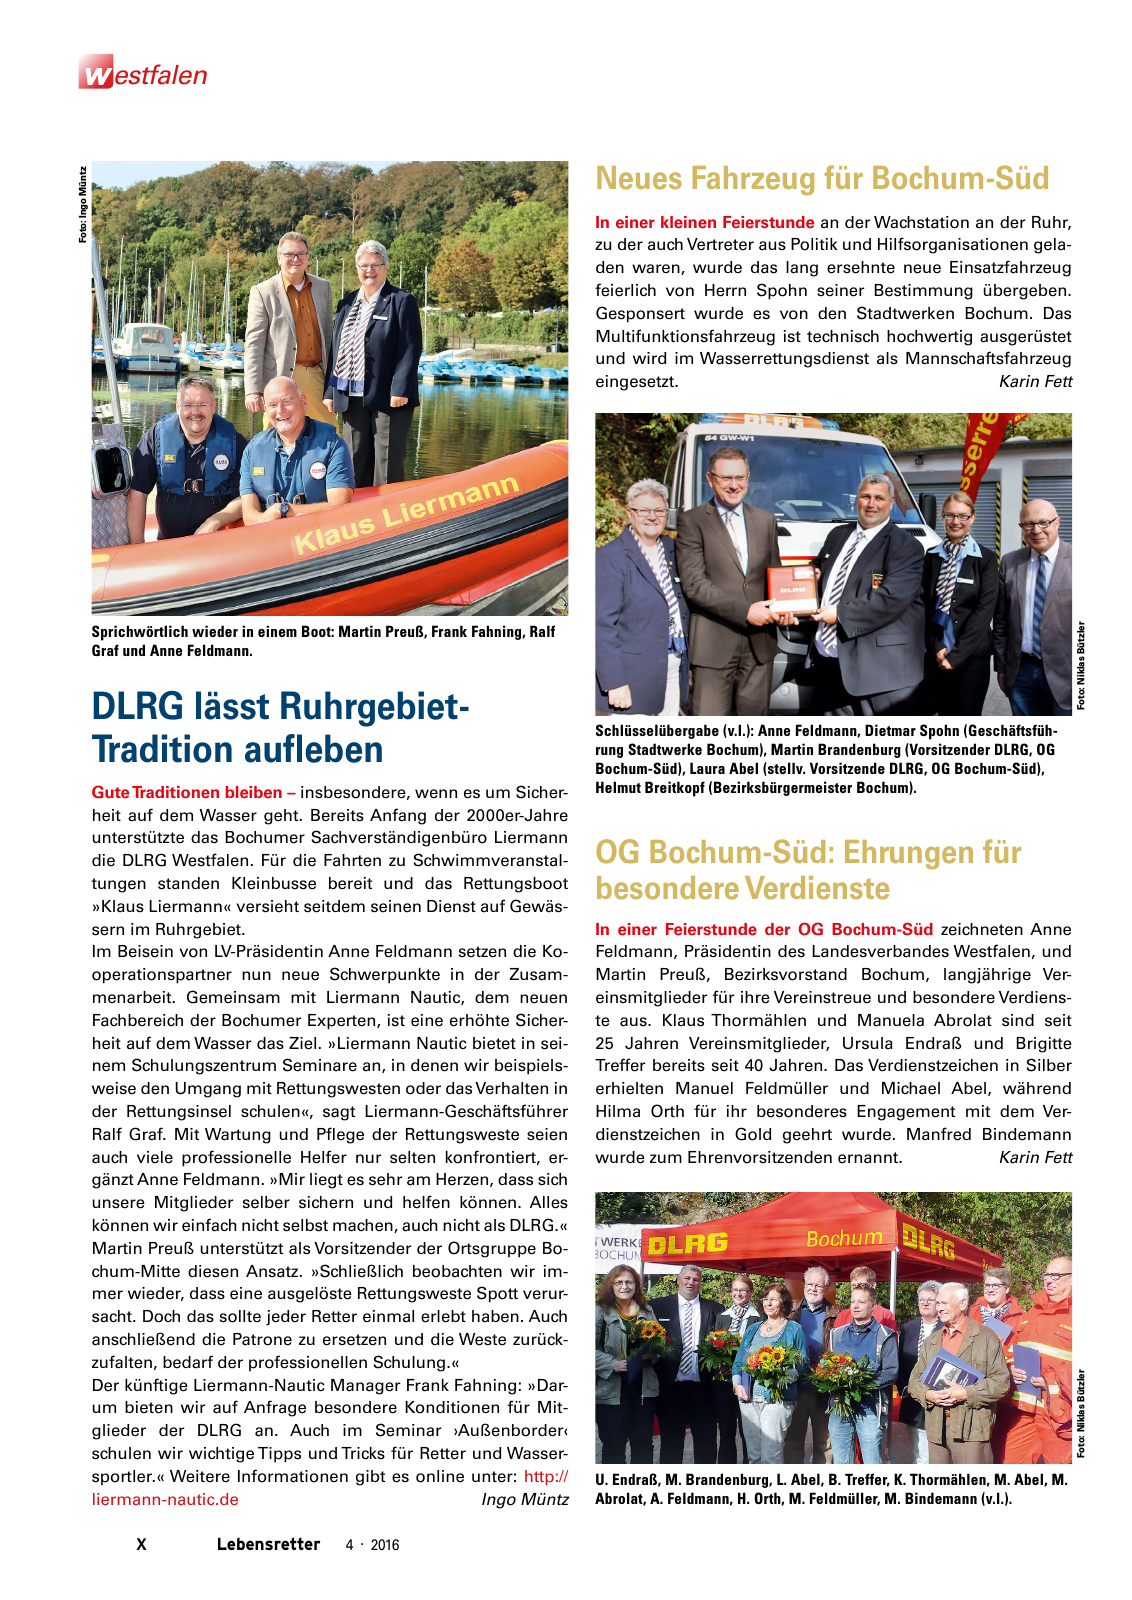 Vorschau Lebensretter 4/2016 - Regionalausgabe Westfalen Seite 12